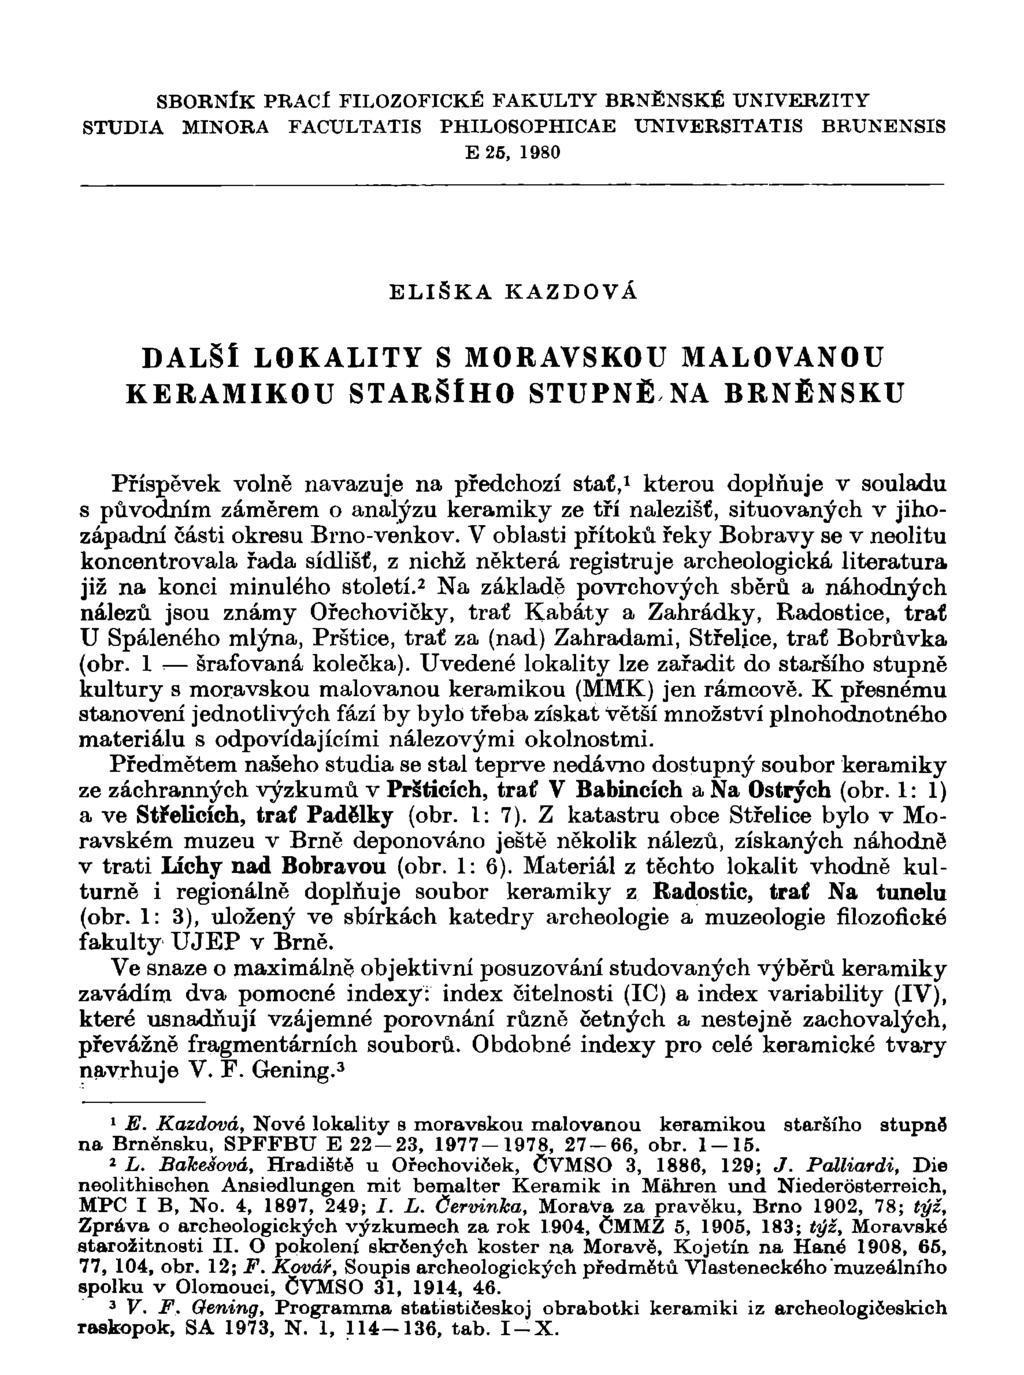 SBORNÍK PRACl FILOZOFICKÉ FAKULTY BRNĚNSKÉ UNIVERZITY STUDIA MINORA FACULTATIS PHILOSOPHICAE UNIVERSITATIS BRUNENSIS E 26, 1980 ELIŠKA KAZDOVÁ DALŠÍ LOKALITY S MORAVSKOU MALOVANOU KERAMIKOU STARŠÍHO